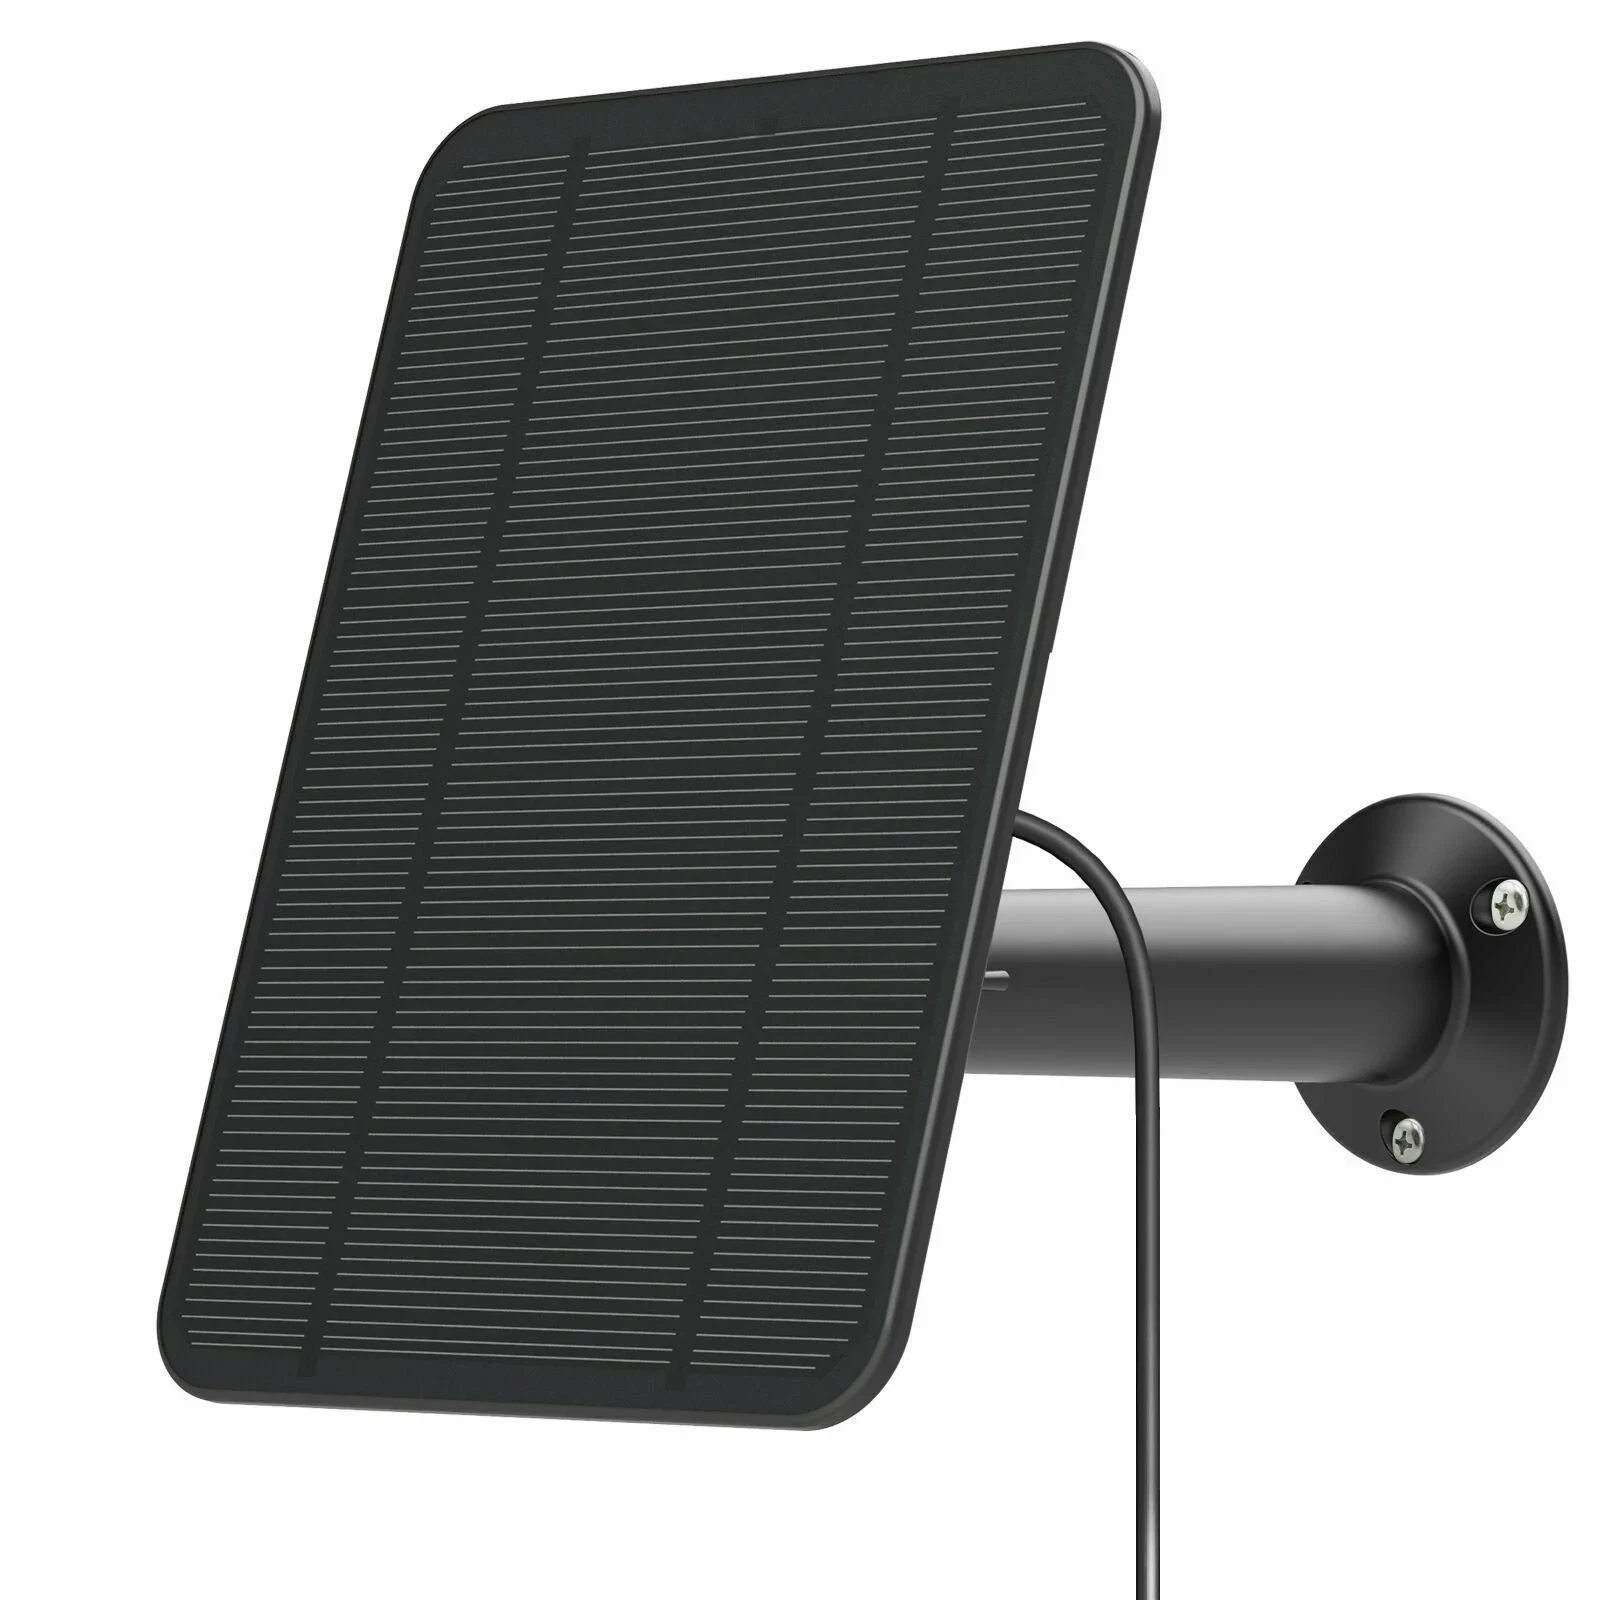 4W solární panel nabíjení pro arlo podstatný reflektor / XL reflektor lanko bovdenu namontovat (black)